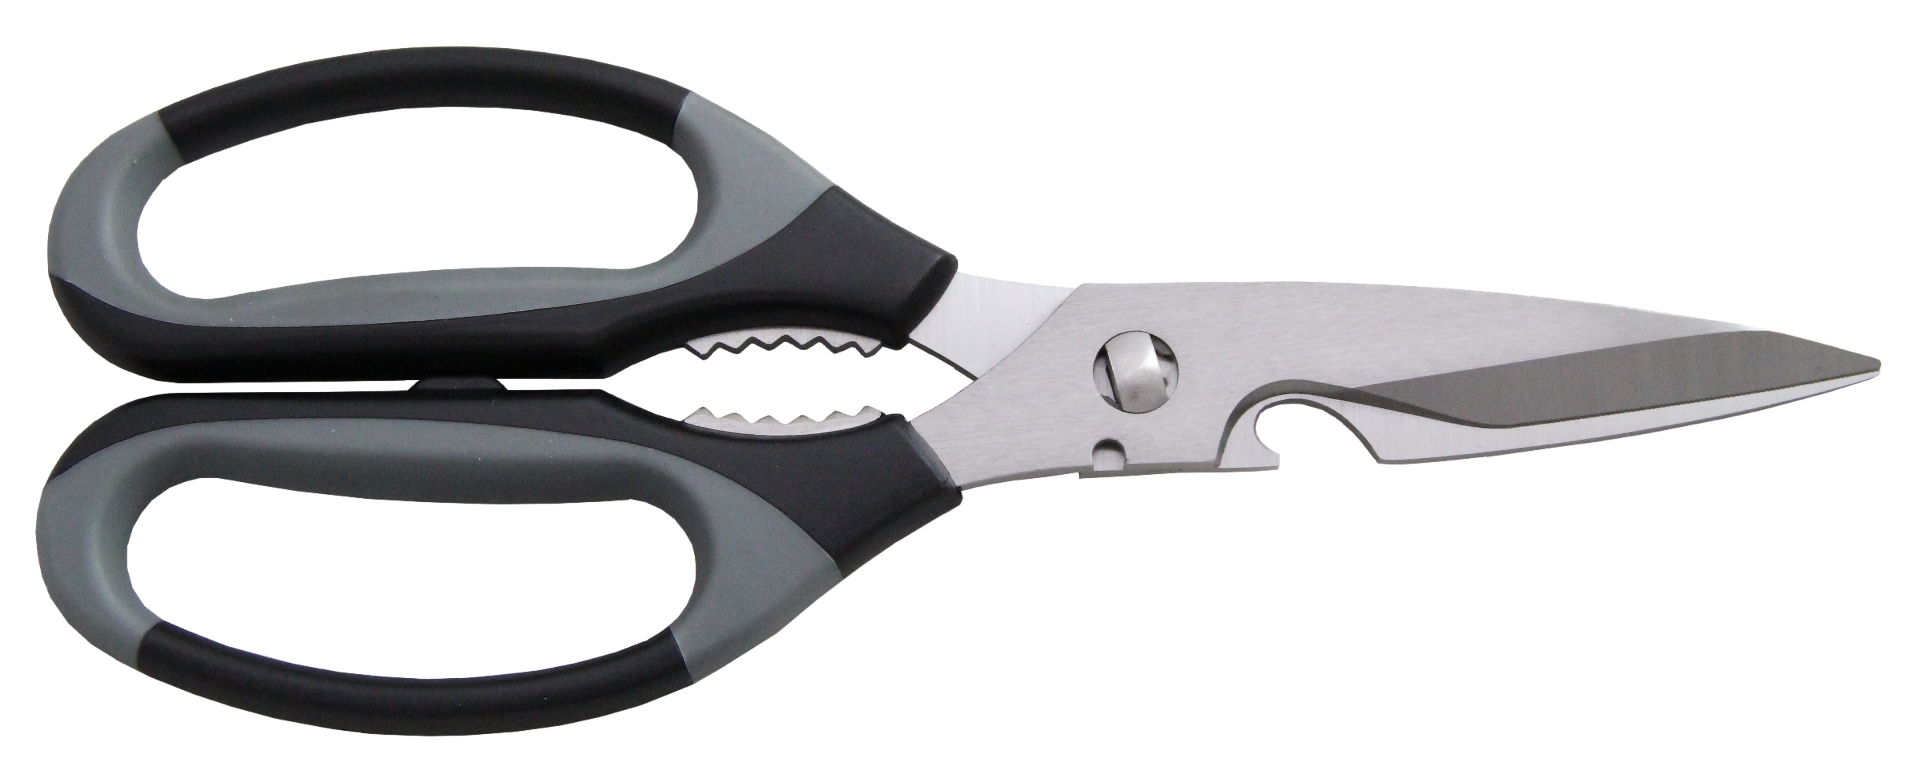 8.5” Kitchen Scissors